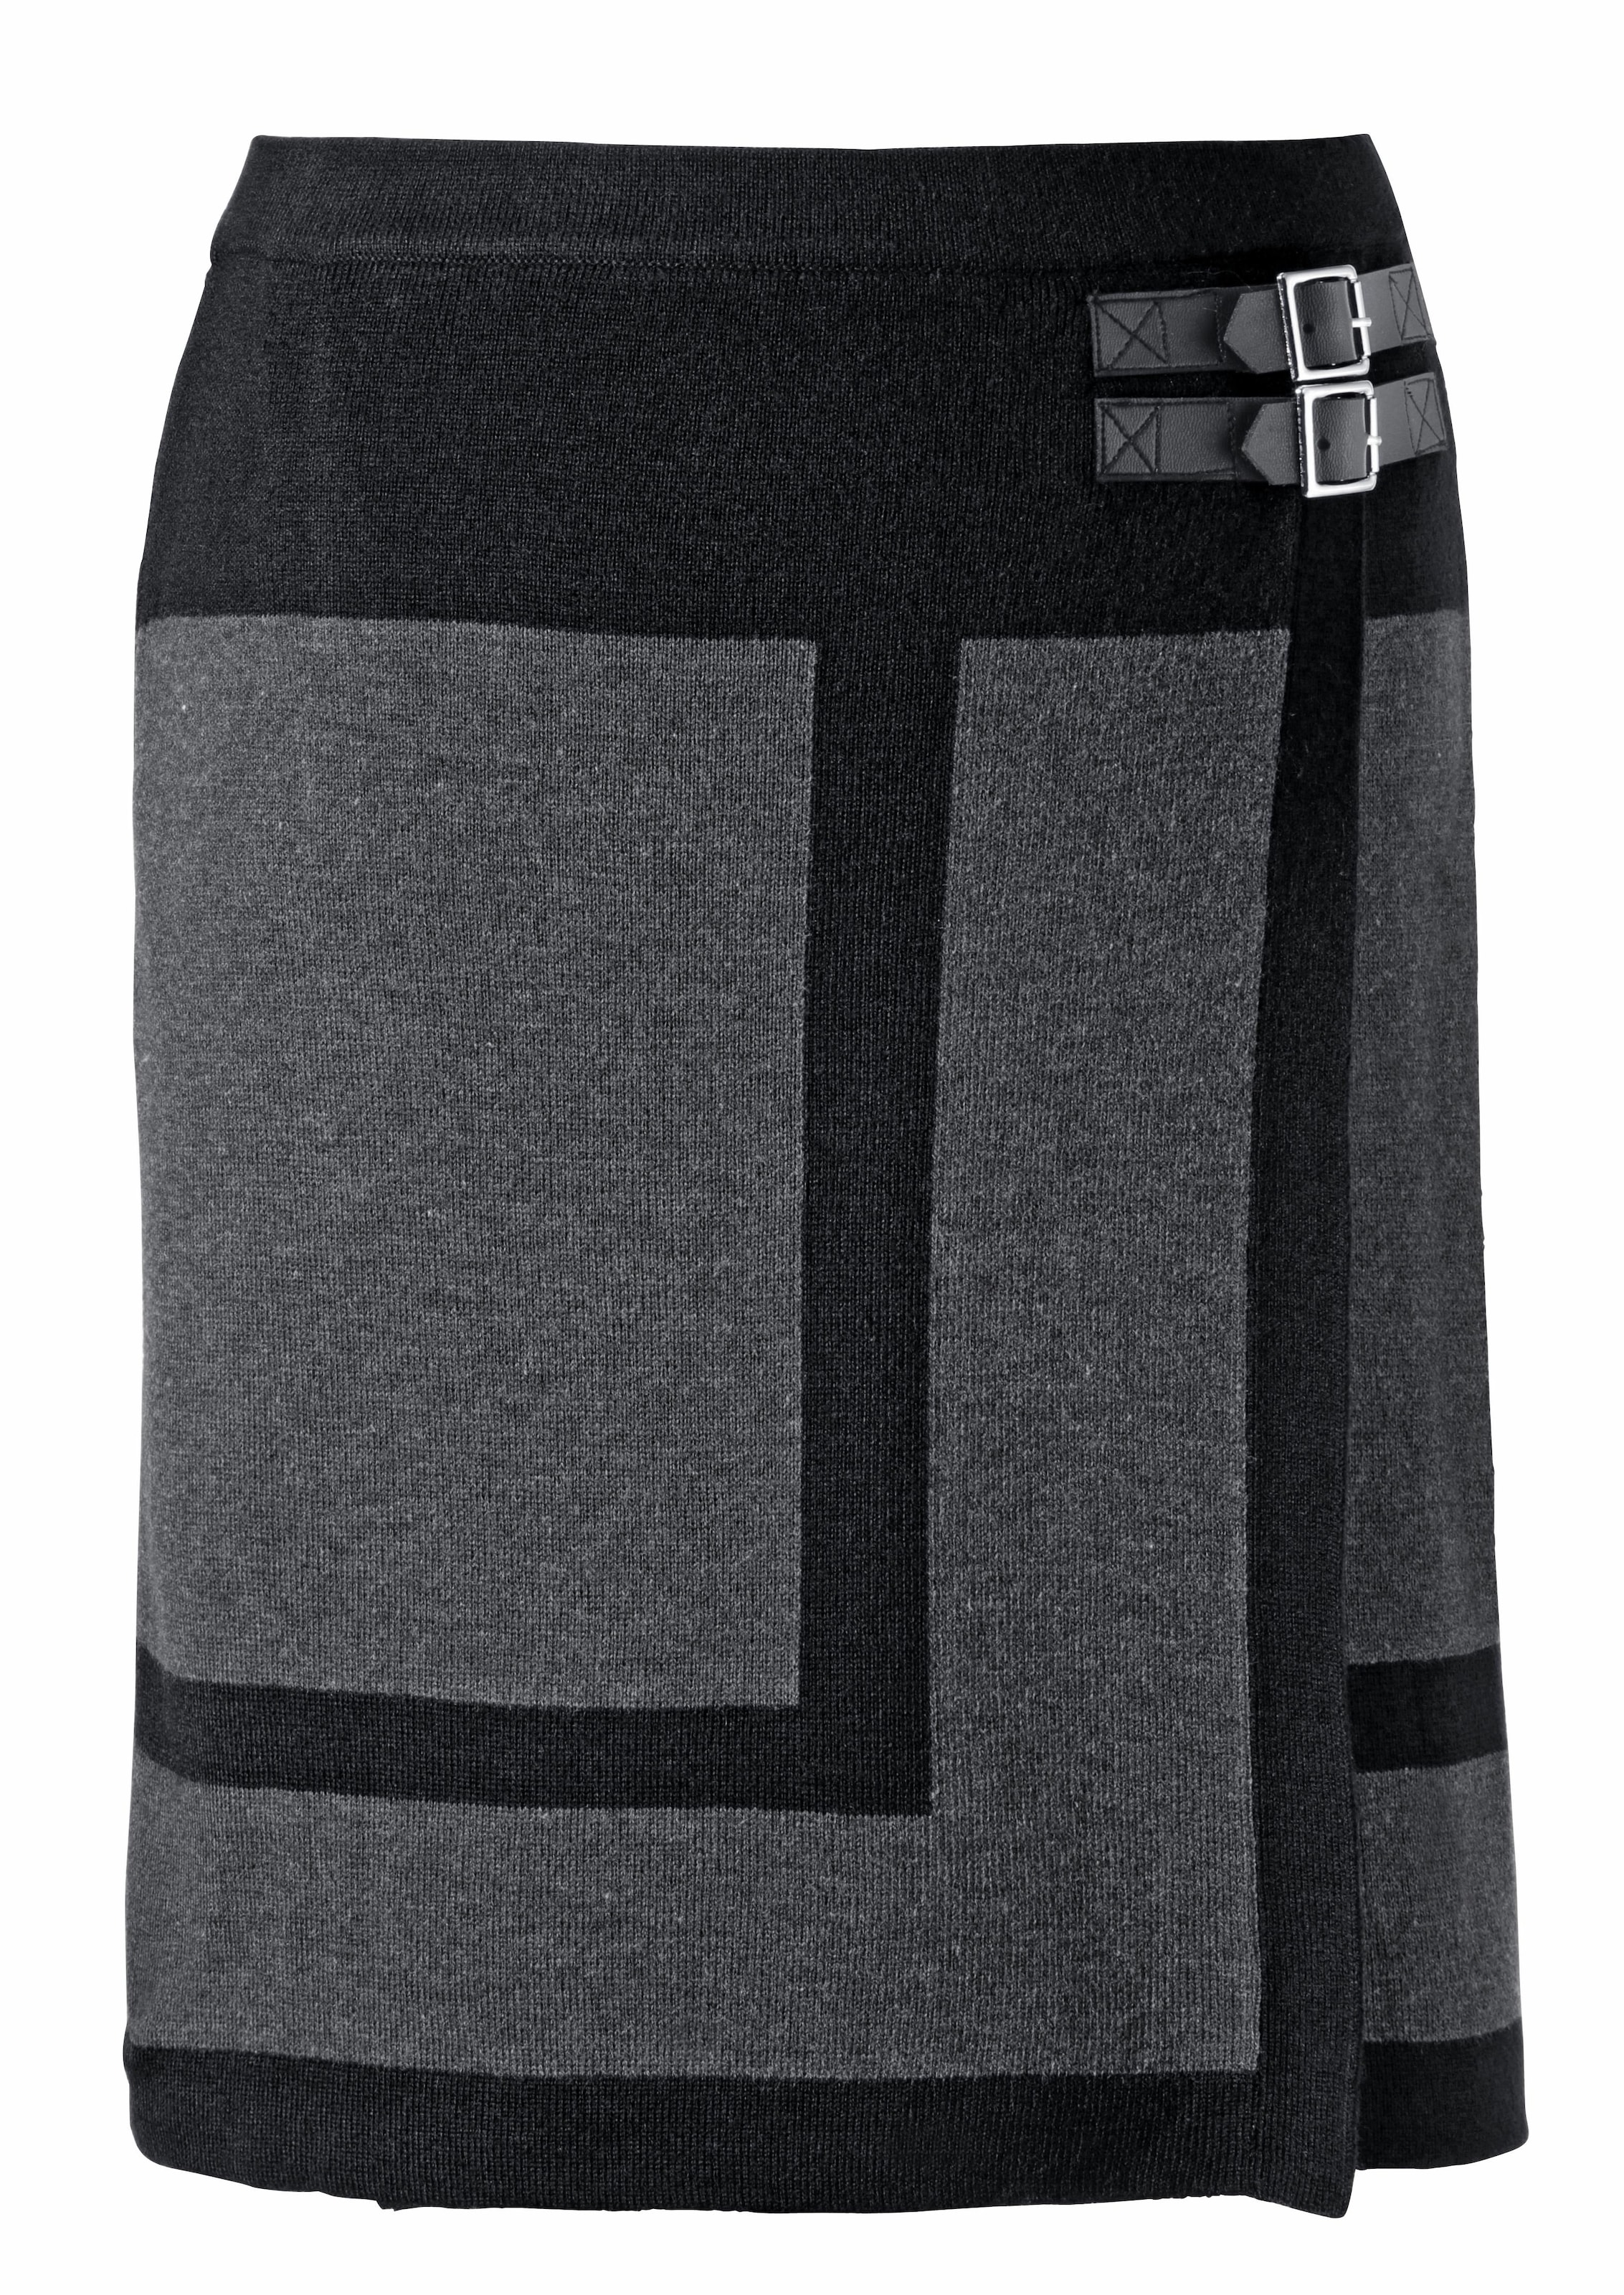 Aniston CASUAL Wickelrock, mit seitlichen Schnallen verziert kaufen